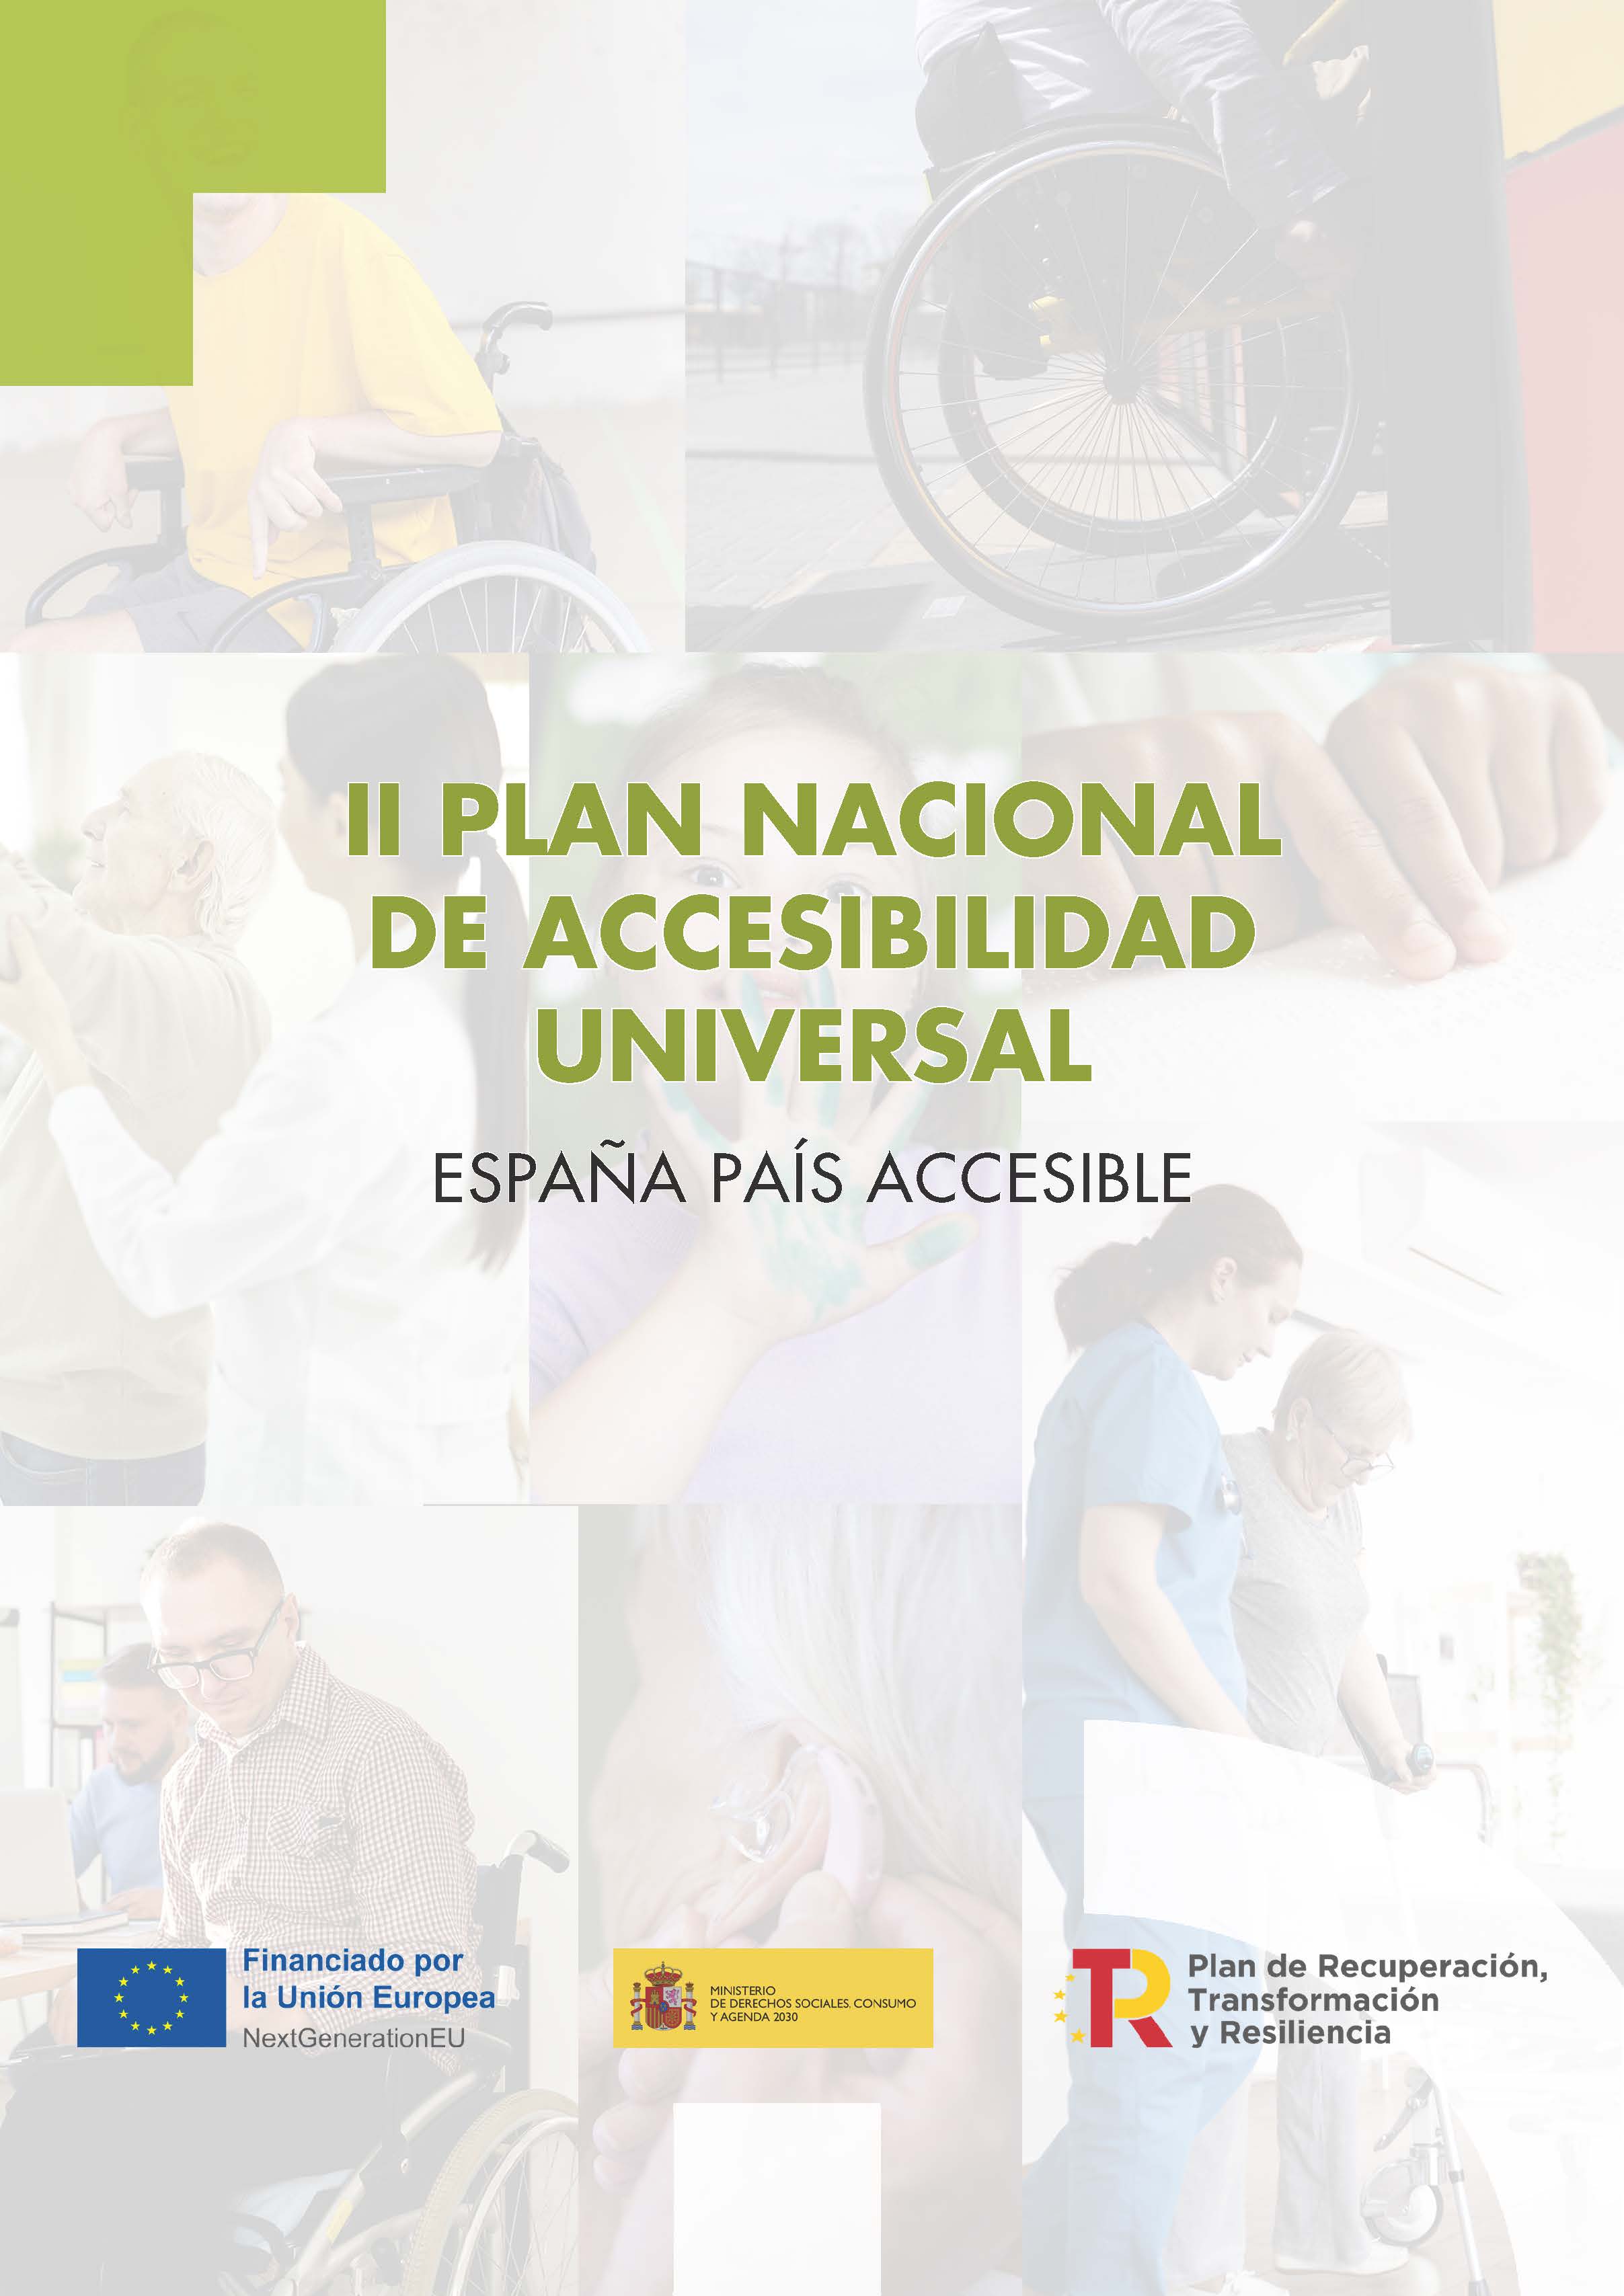 Imagen noticia Portada del II Plan Nacional de Accesibilidad Universal. España País Accesible